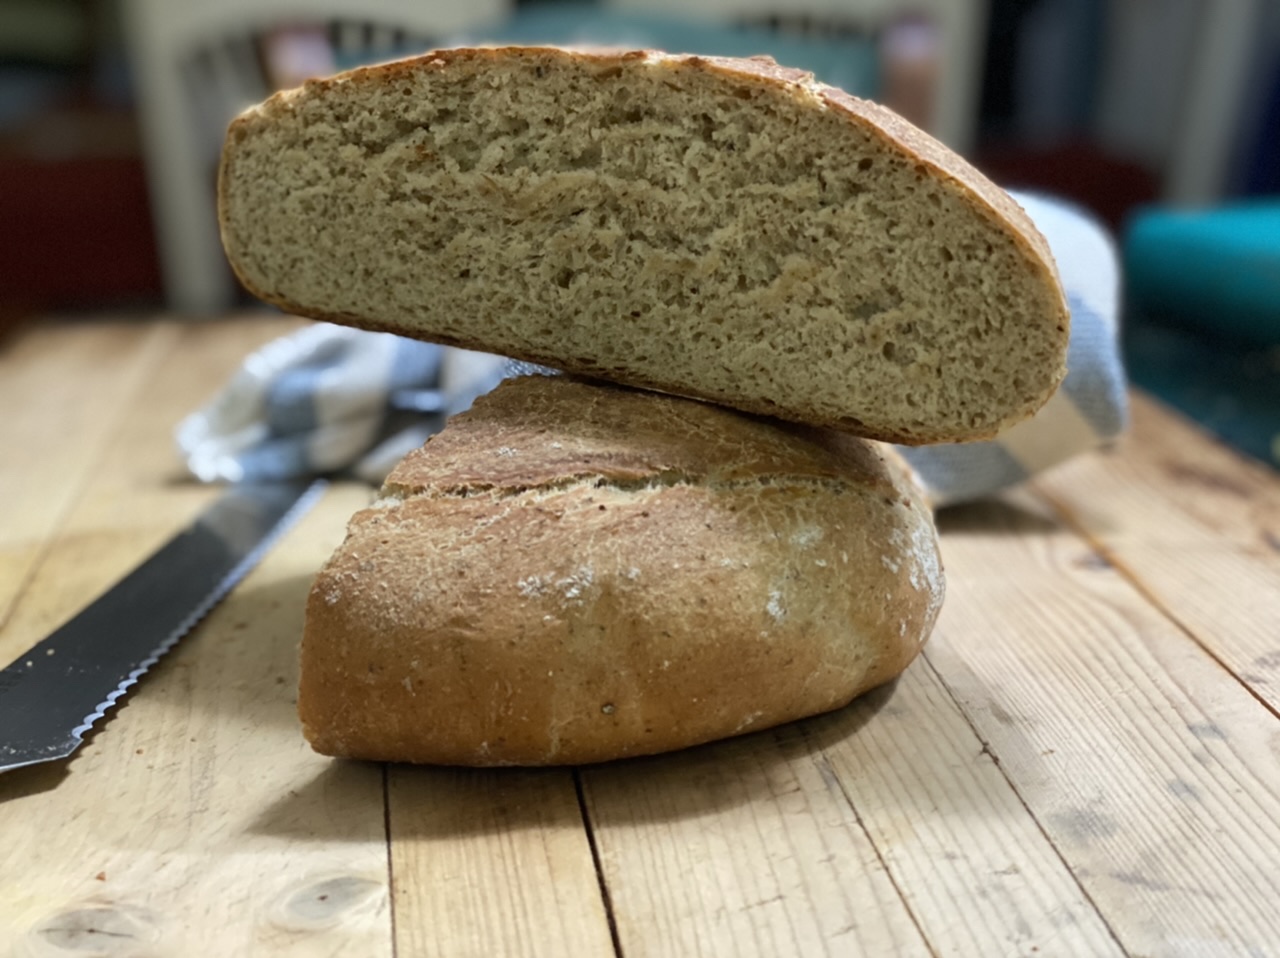 D4B77114 EE77 4B0B A1FA 8625A4B820B0 - How to Make the Best Rustic Dutch Oven Crispy Bread